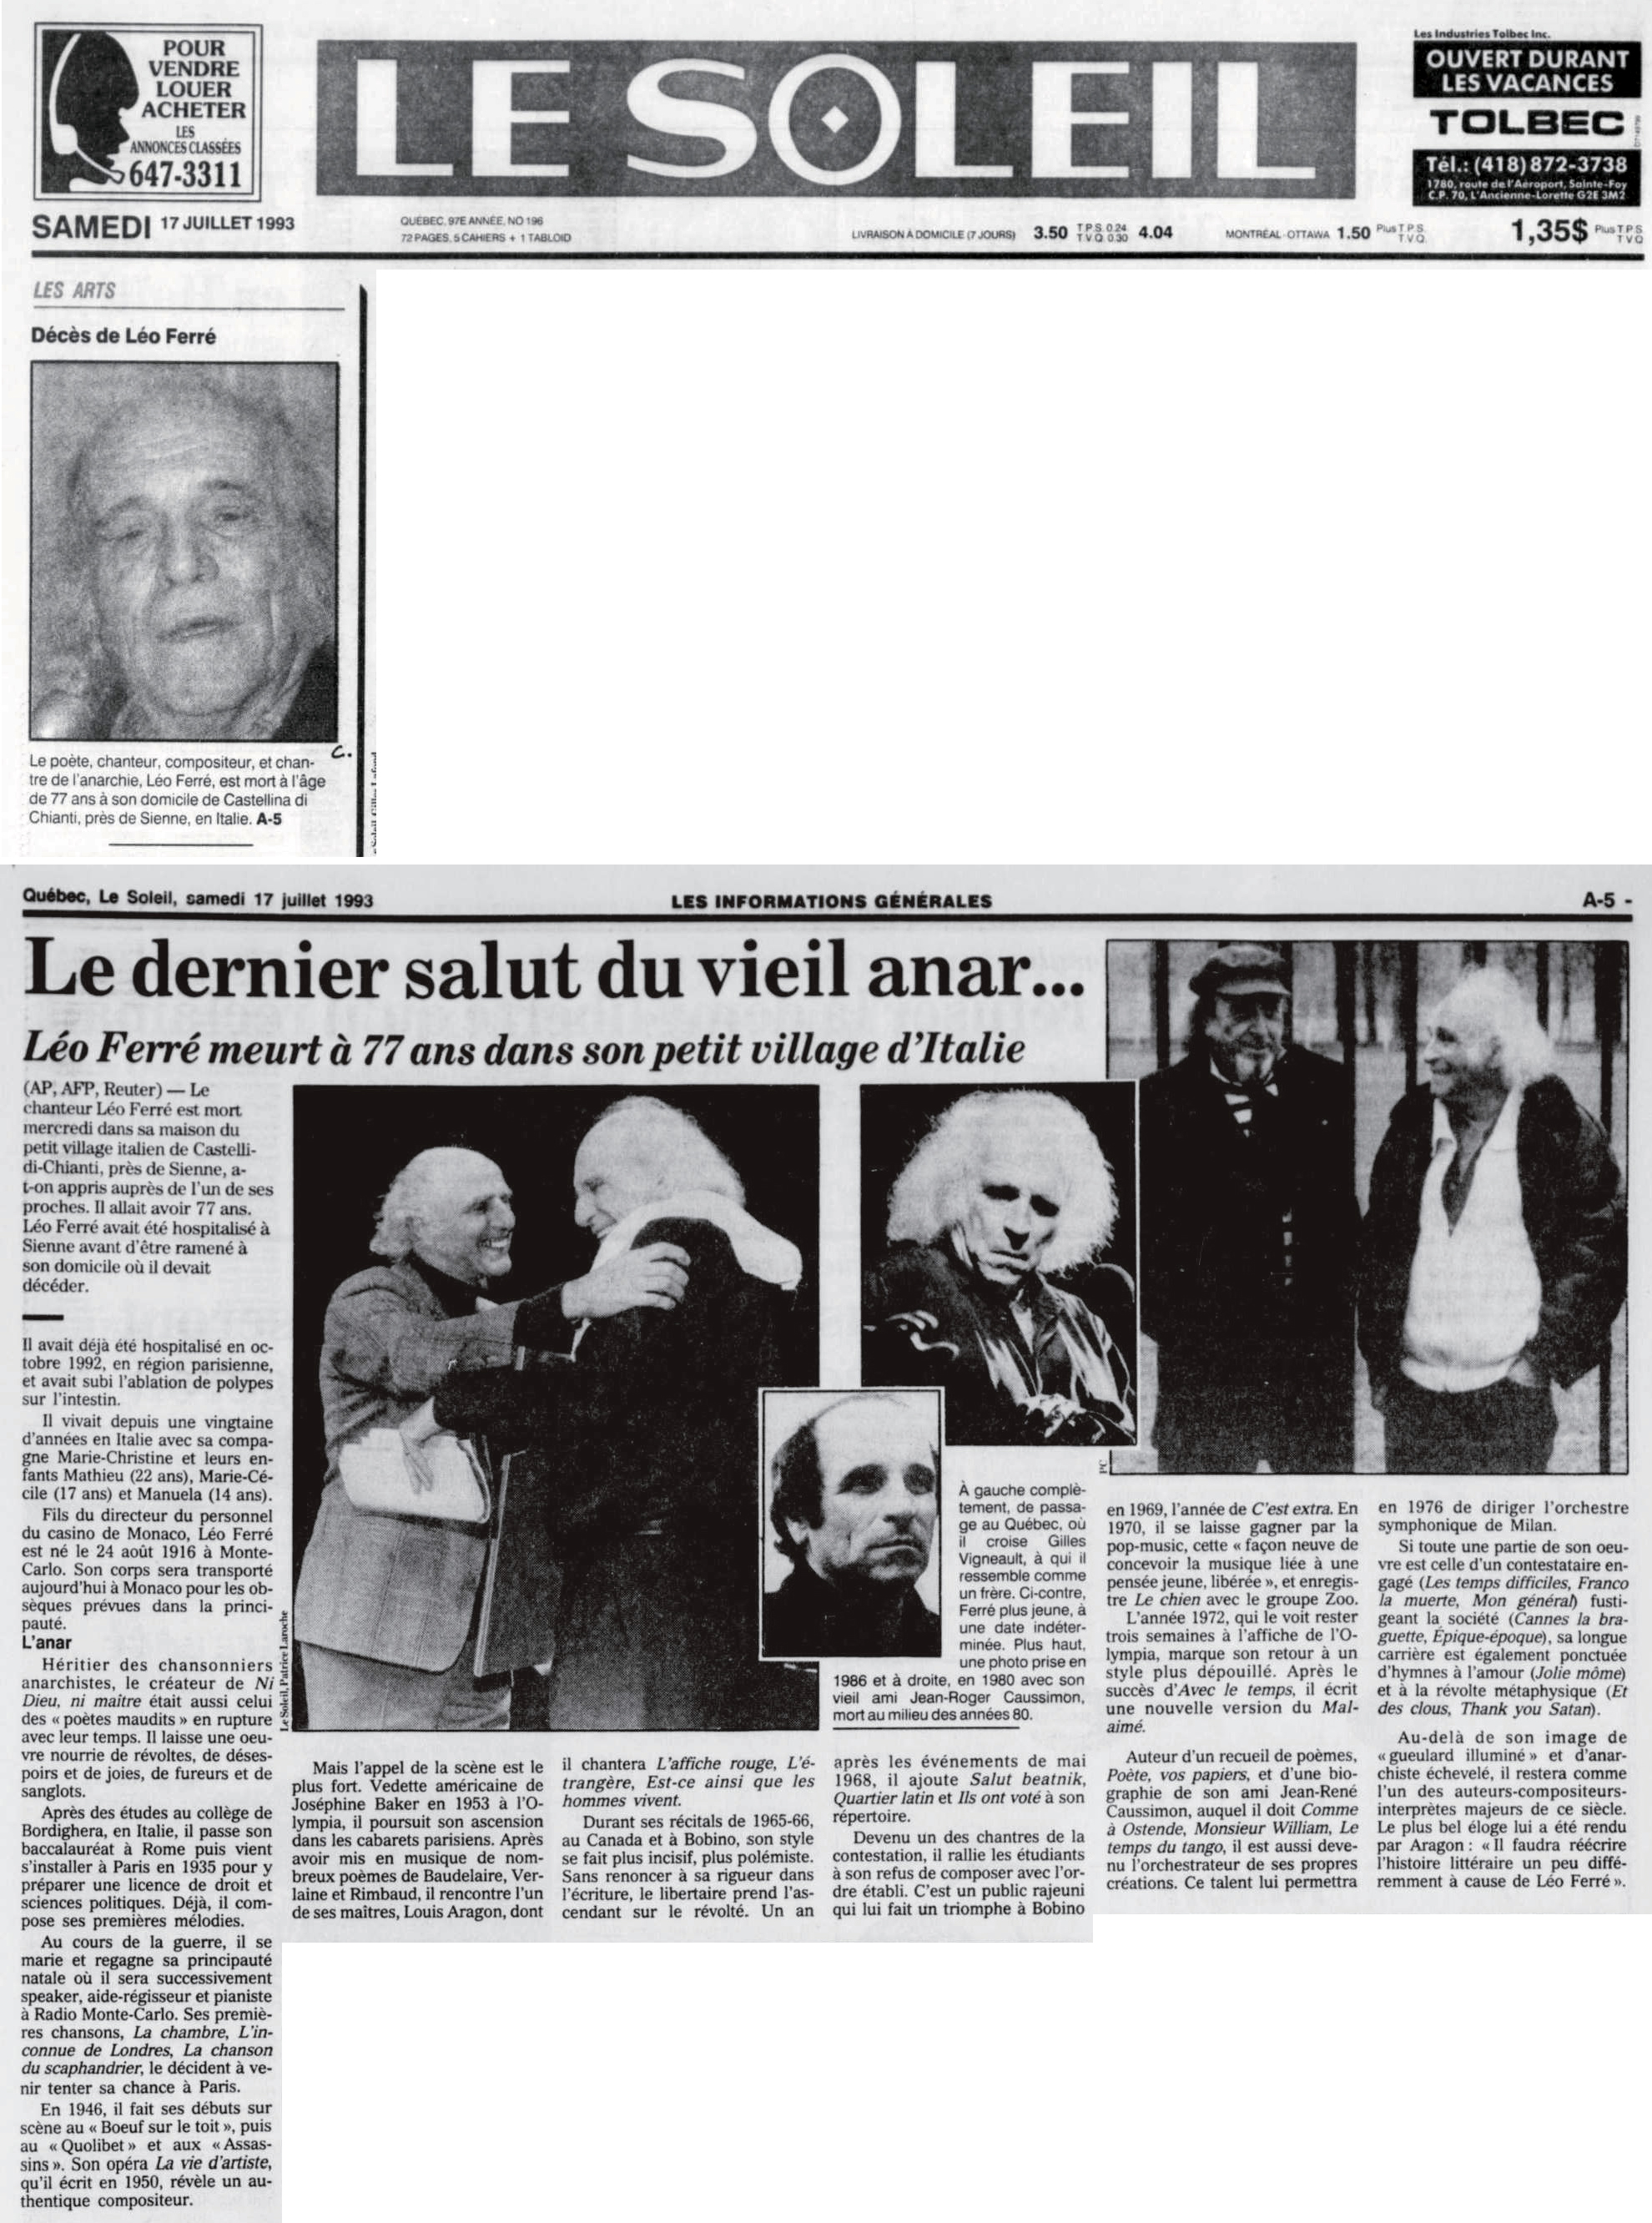 Léo Ferré - Le soleil, 1896- (Québec), 17 juillet 1993, Cahier A